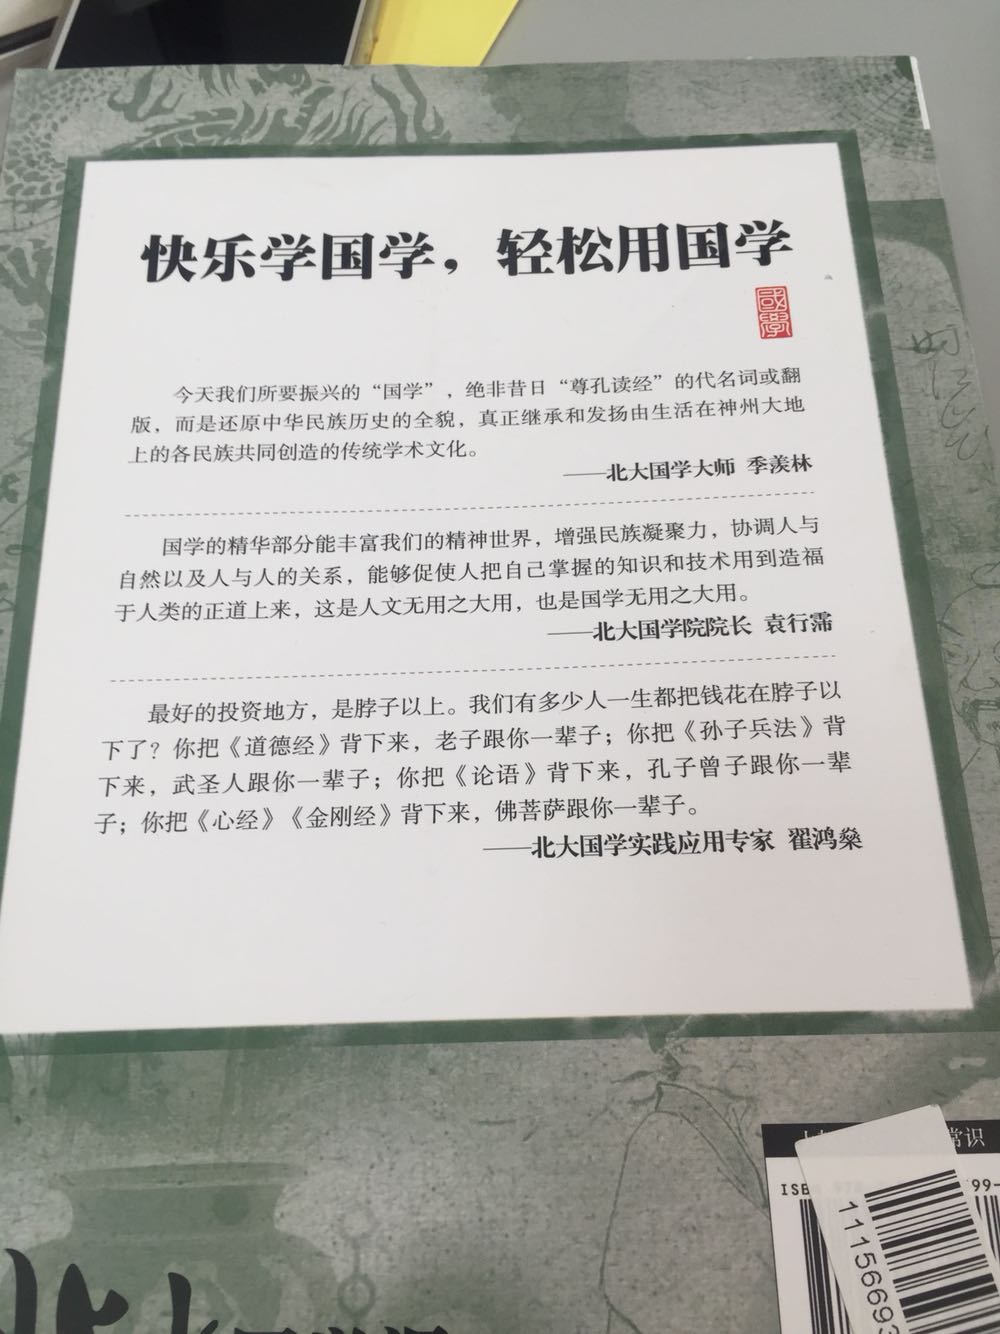 之前在北京机场的书店看过，觉得不错，国学是应该普及到每个人的，好东西！